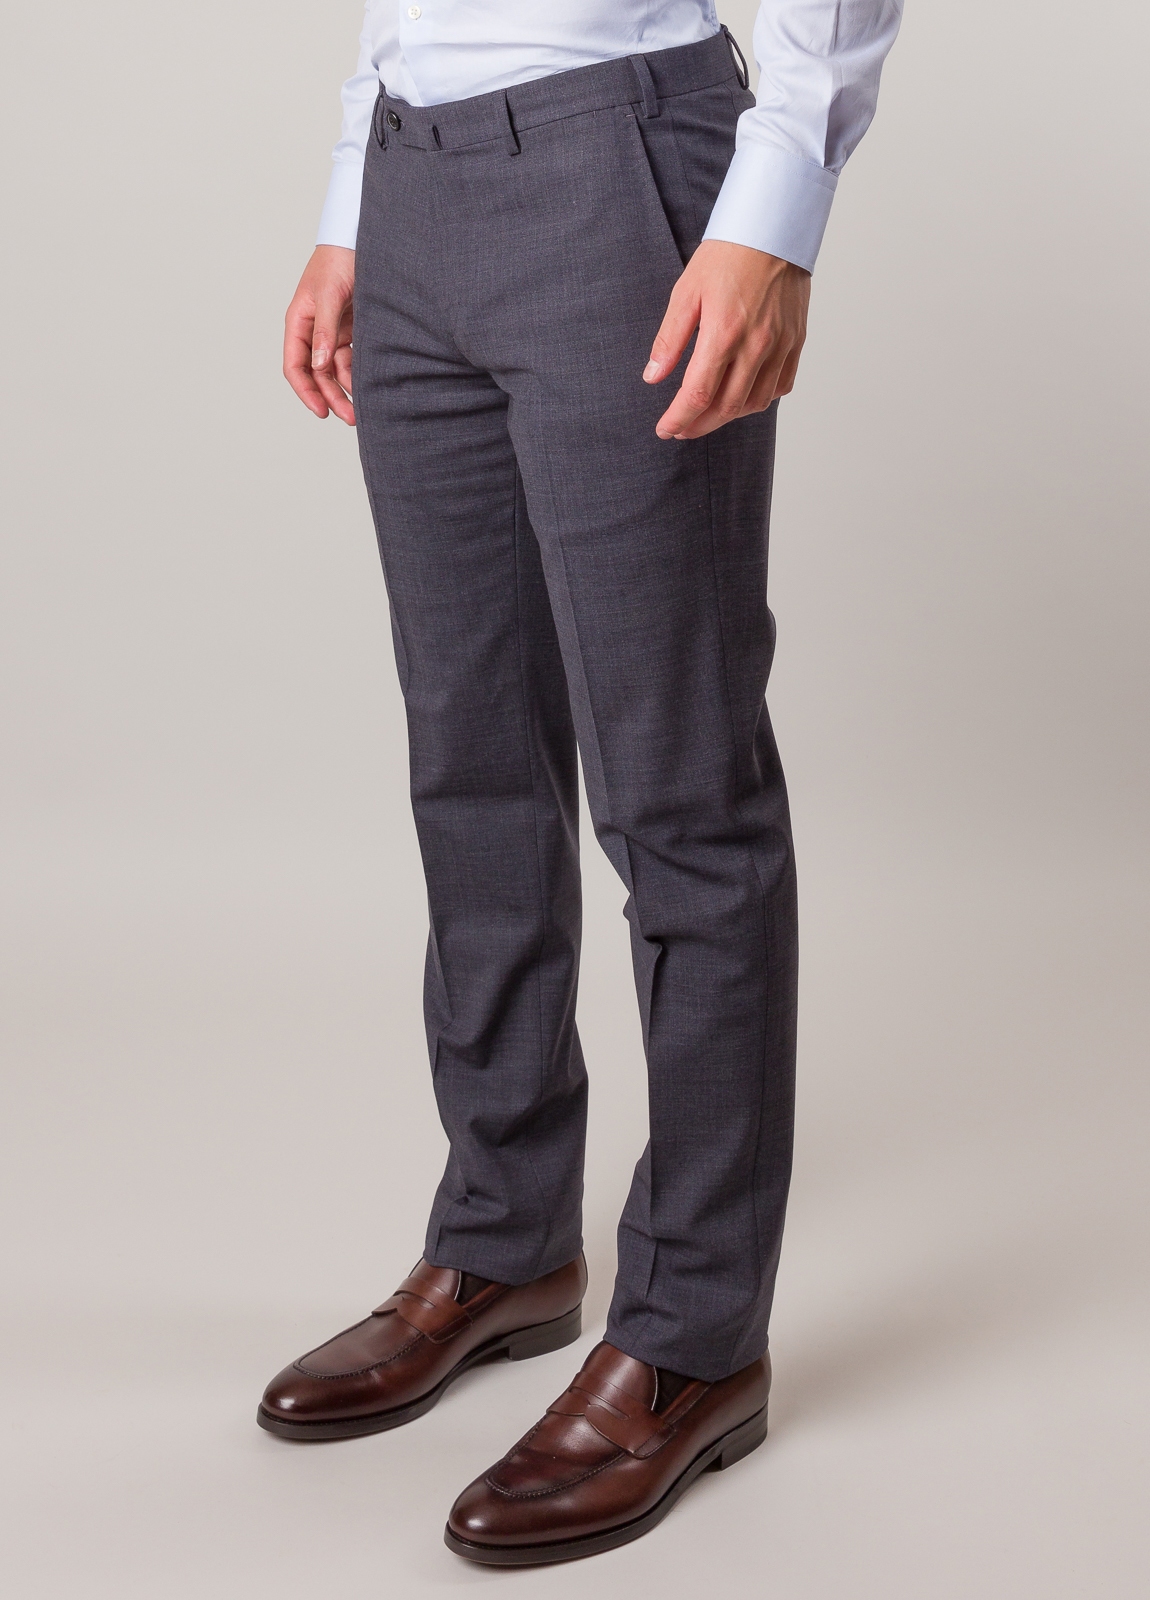 Pantalón vestir FUREST COLECCION color gris - Ítem2